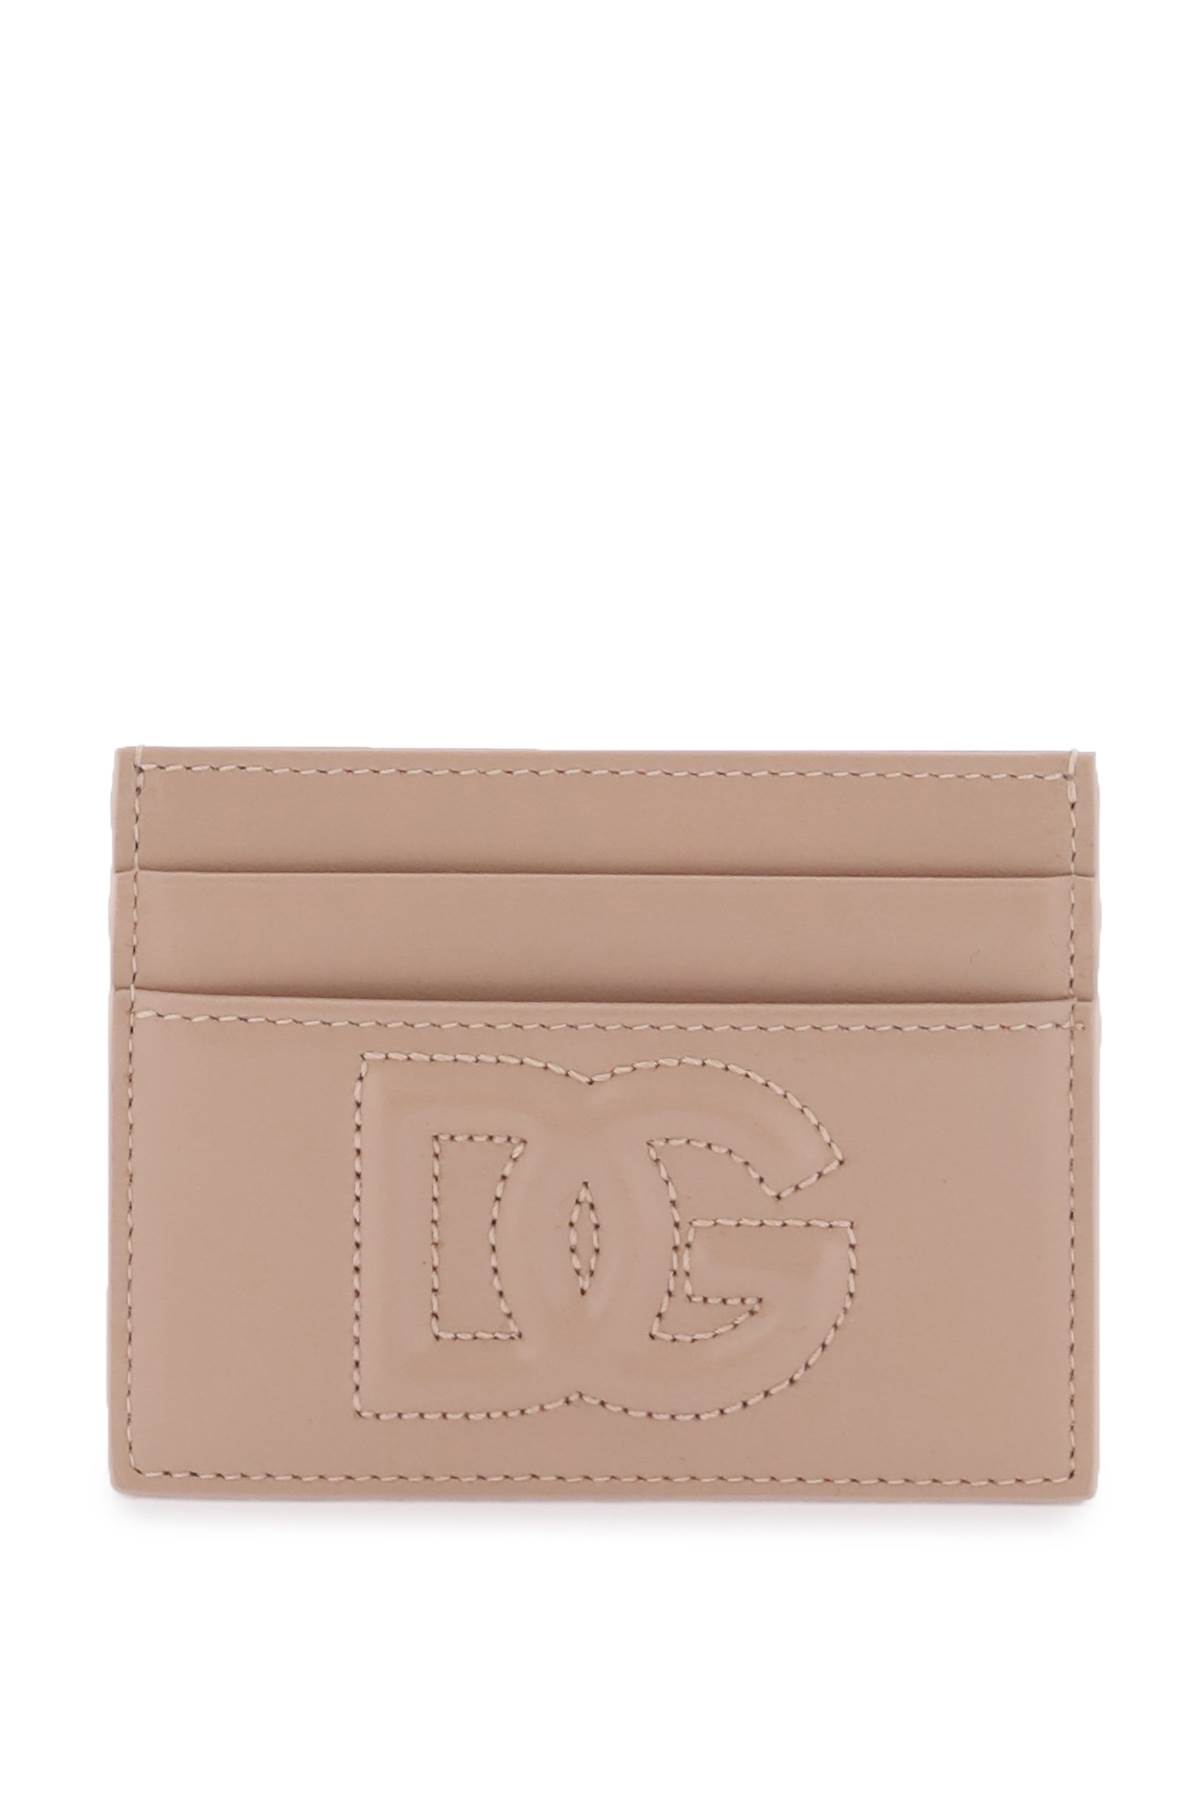 Dolce & Gabbana Dg Logo Cardholder In Cipria